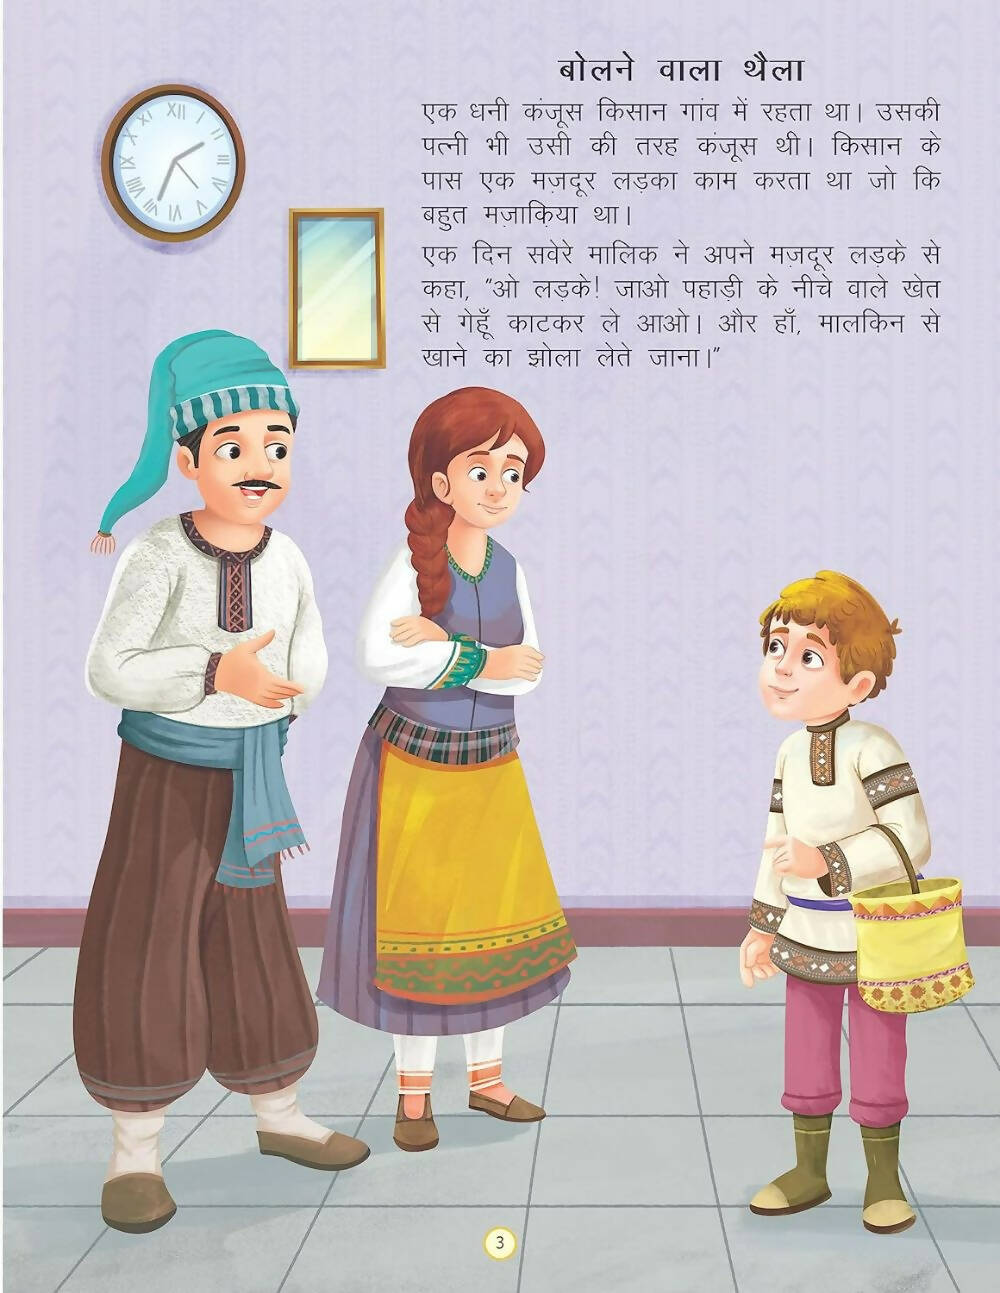 Dreamland Bolne Wala Thaila - Duniya Ki Sair Kahaniya Hindi Story Book for Kids Age 4 - 7 Years